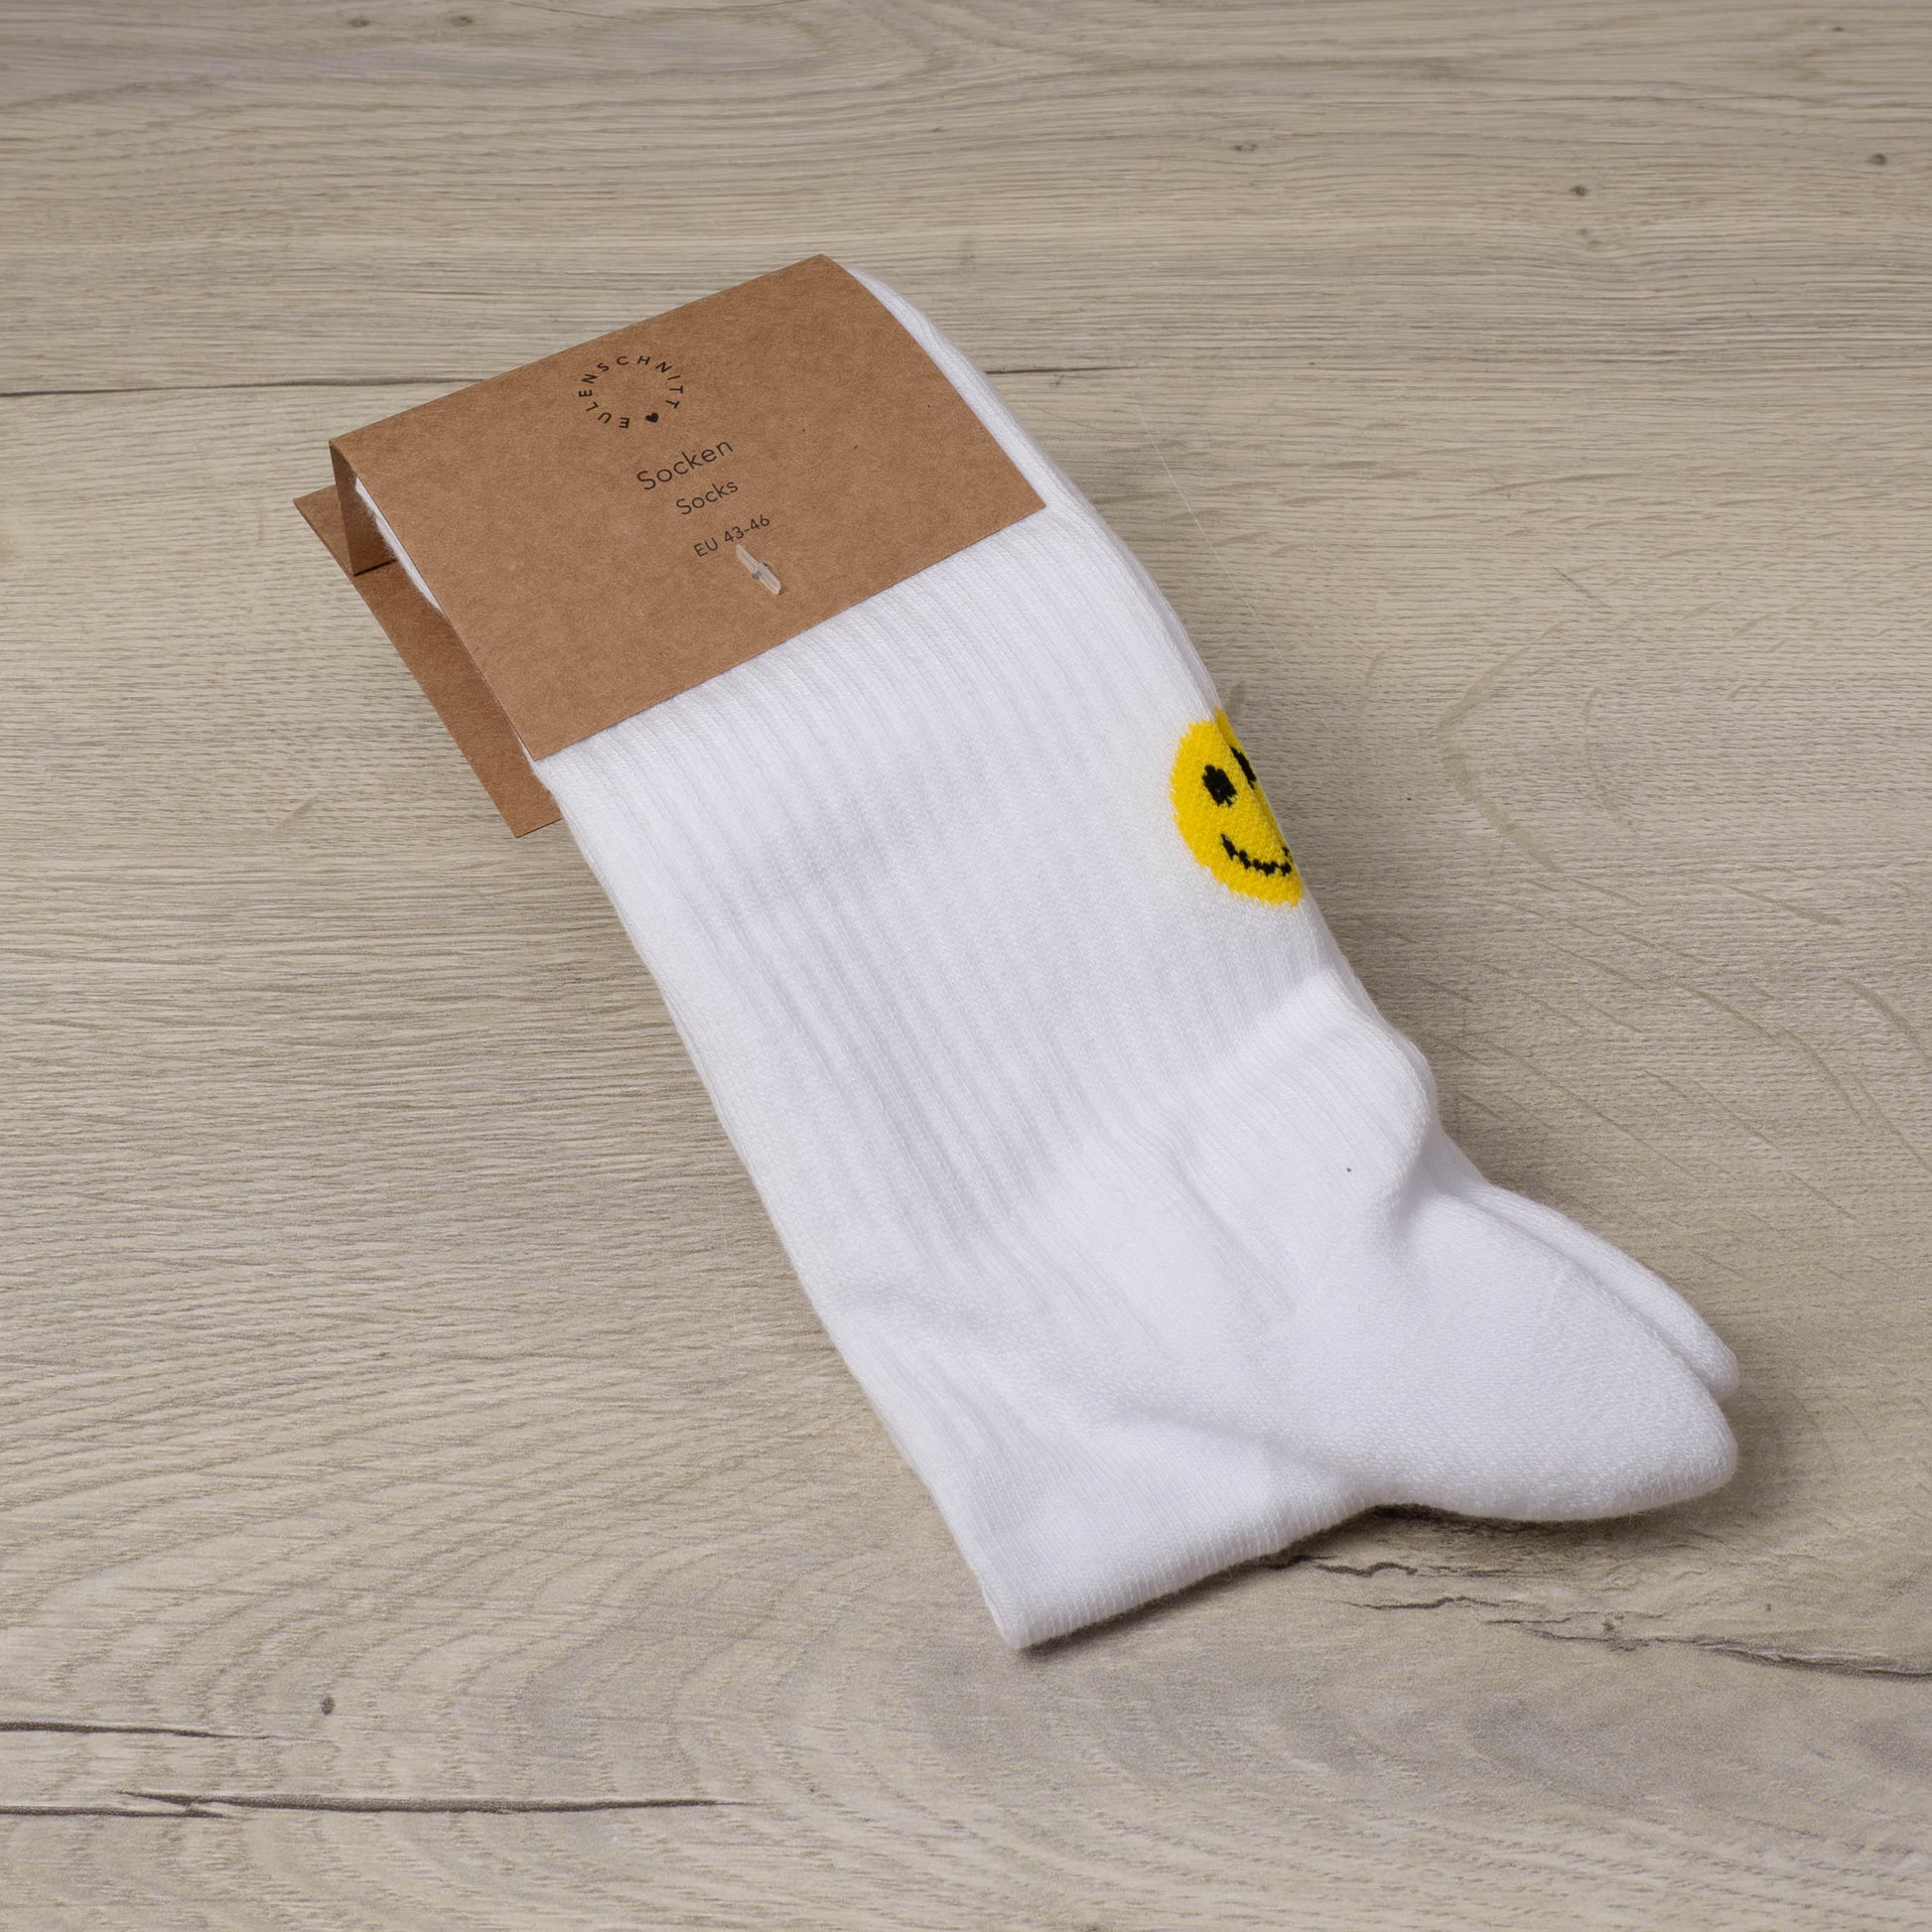 Socken - Gelber Smiley - 39-42 - Socken - Eulenschnitt